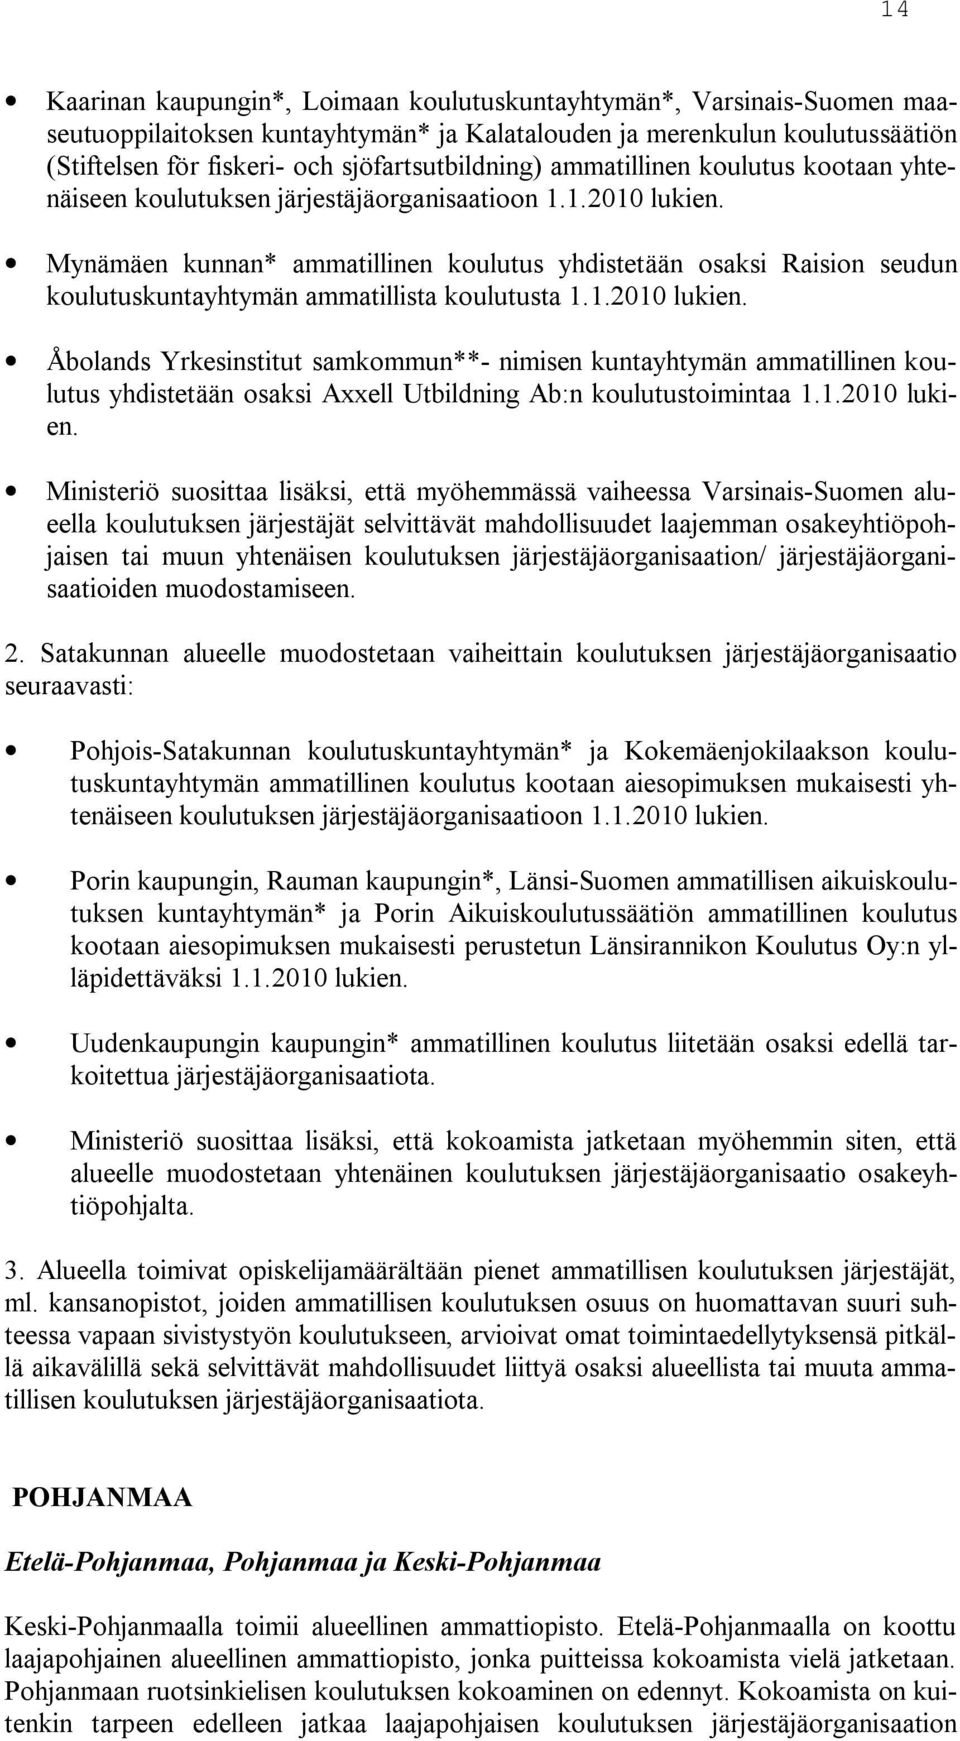 Mynämäen kunnan* ammatillinen koulutus yhdistetään osaksi Raision seudun koulutuskuntayhtymän ammatillista koulutusta 1.1.2010 lukien.